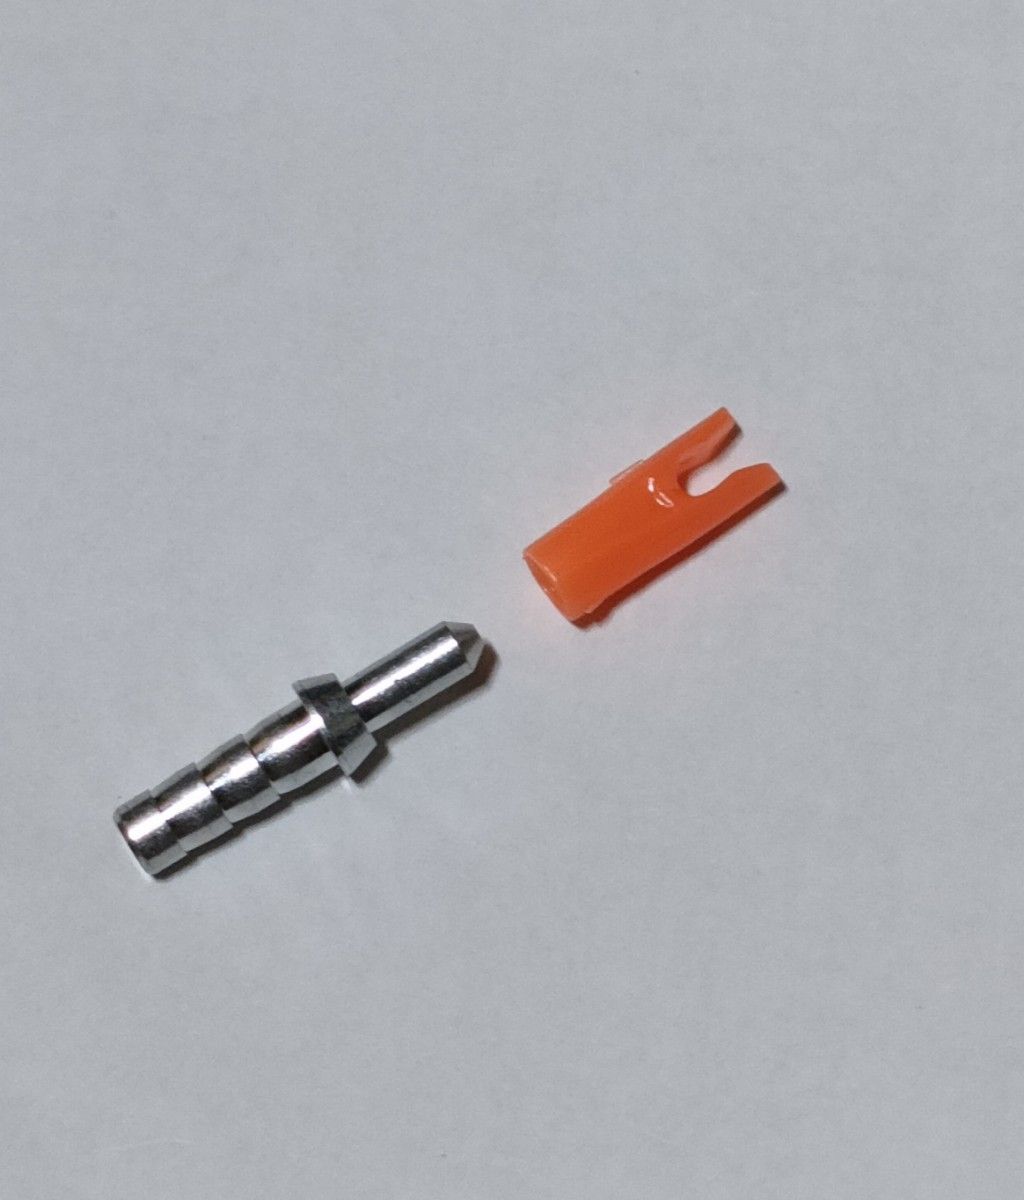 アーチェリー　ピンノック(オレンジ)、ピンインサート(ID3.2mm又は、ID4.2mm)　セット